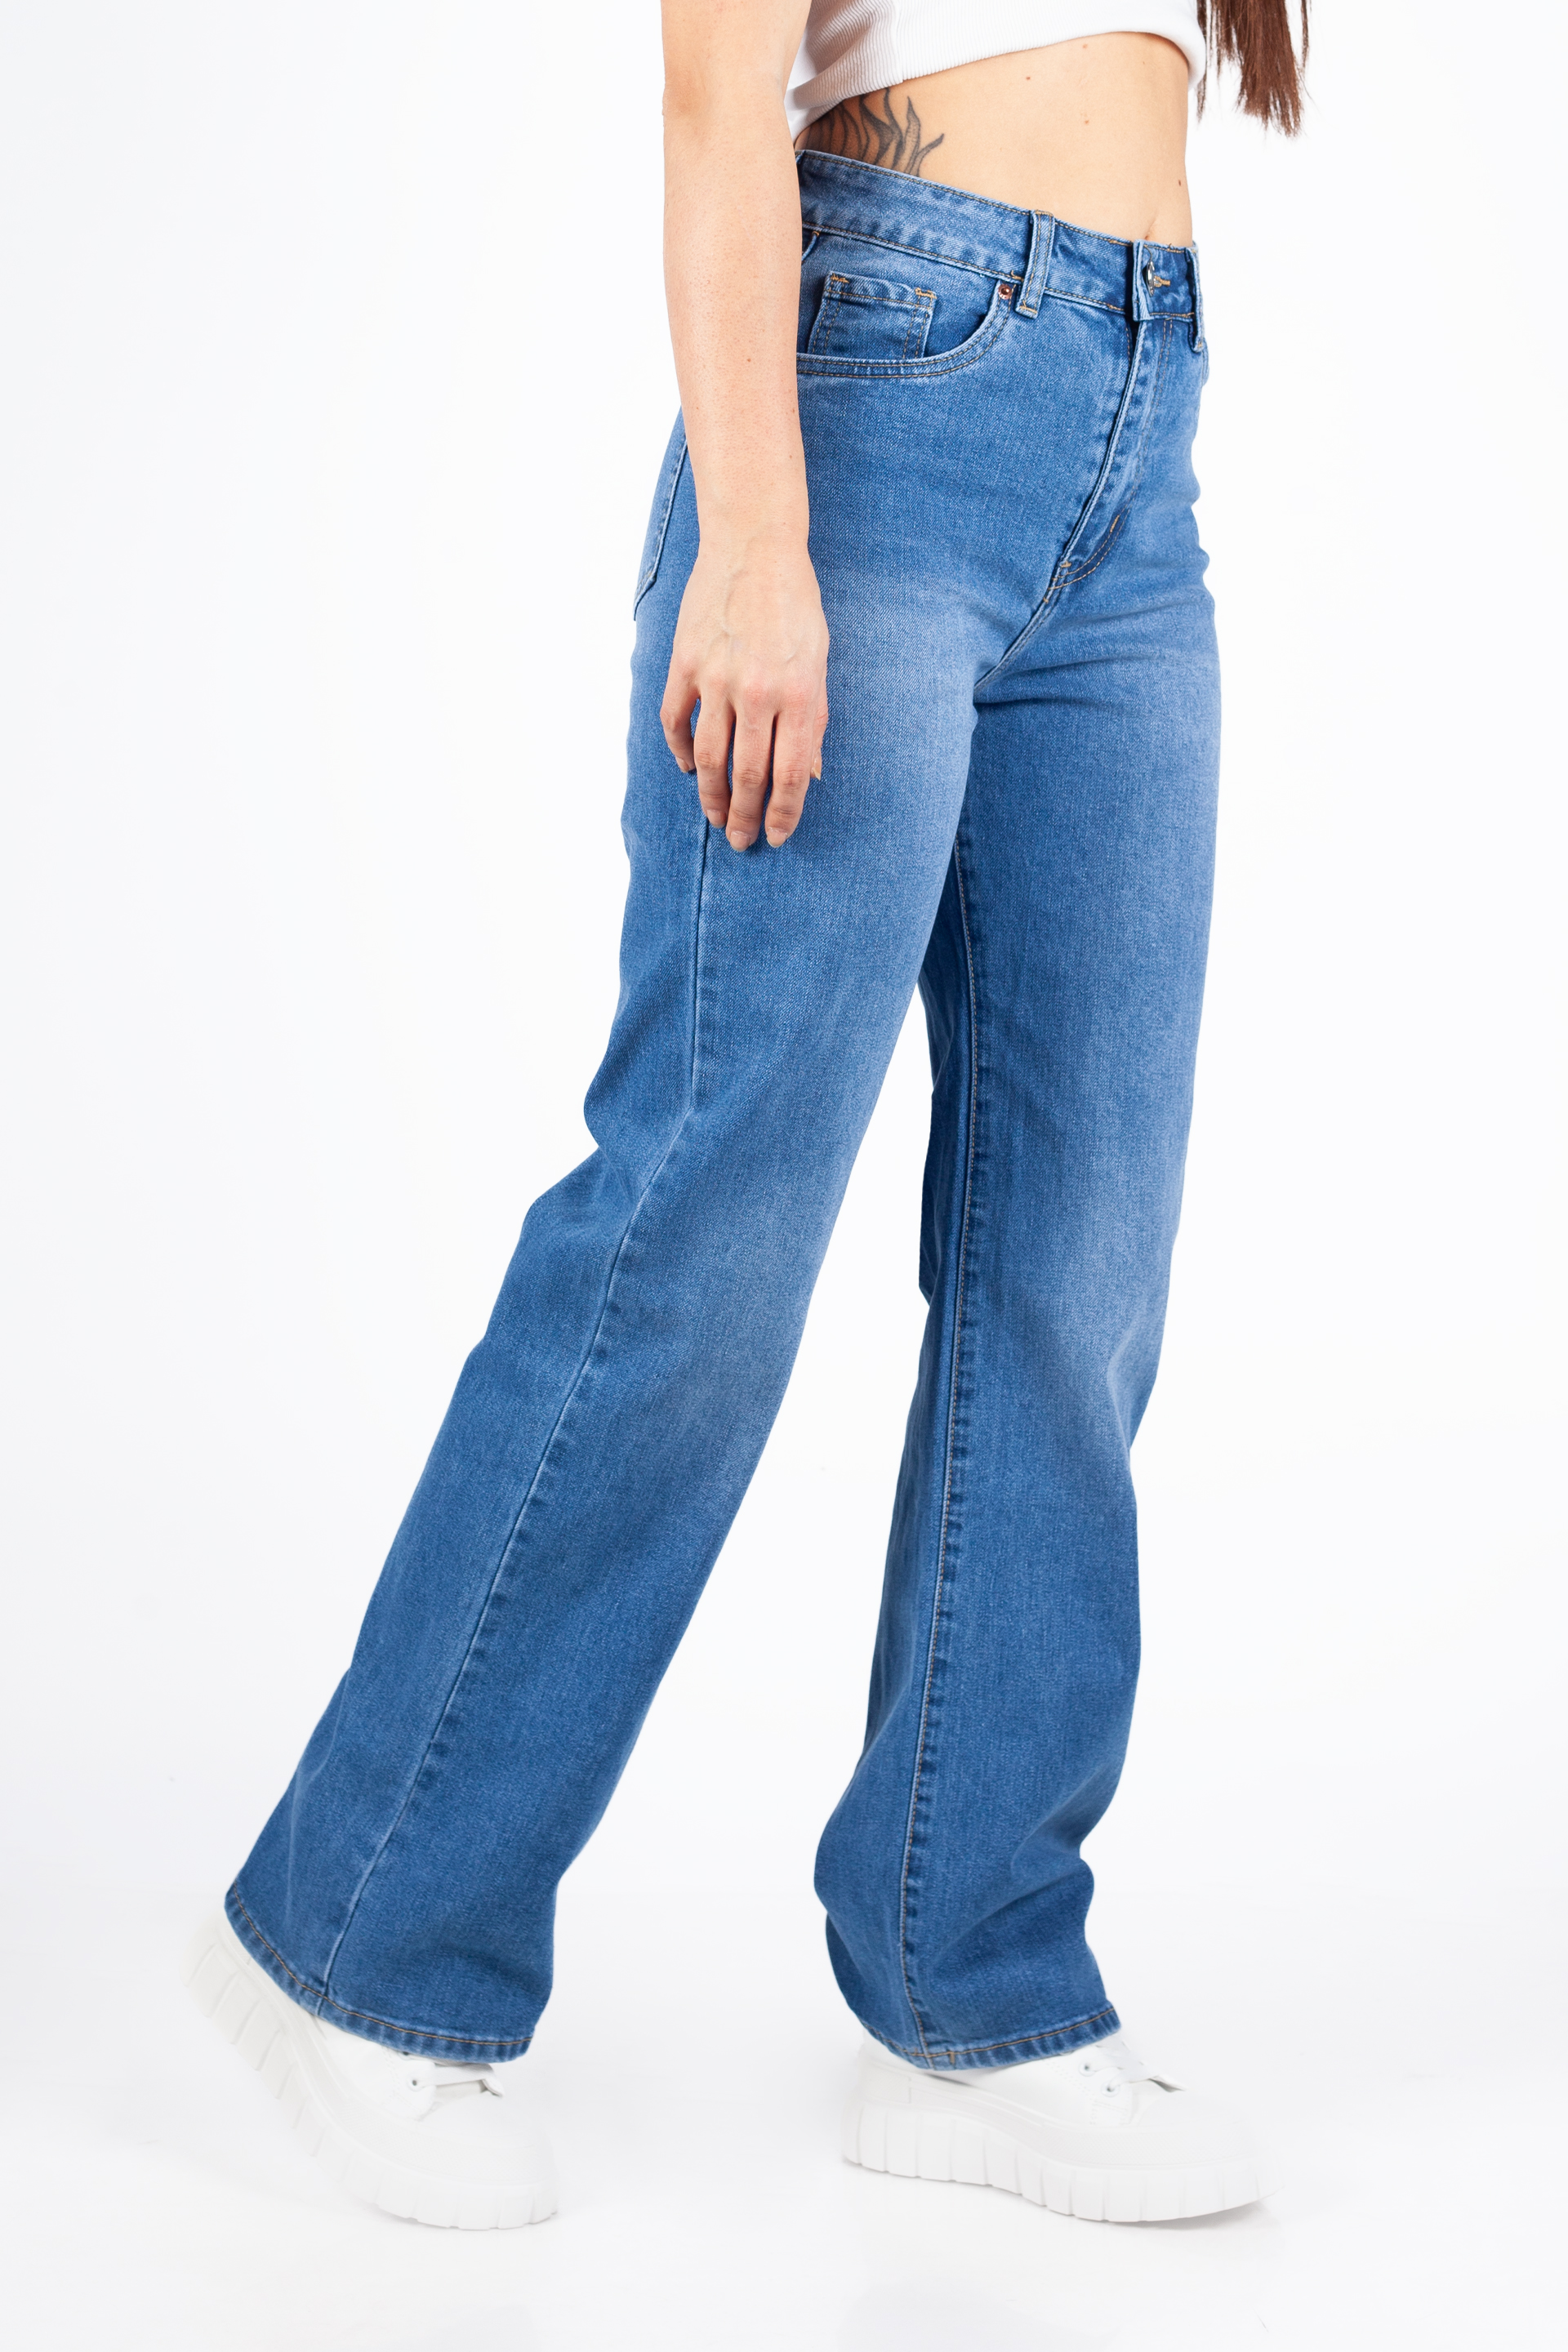 Jeans VS MISS VS8163